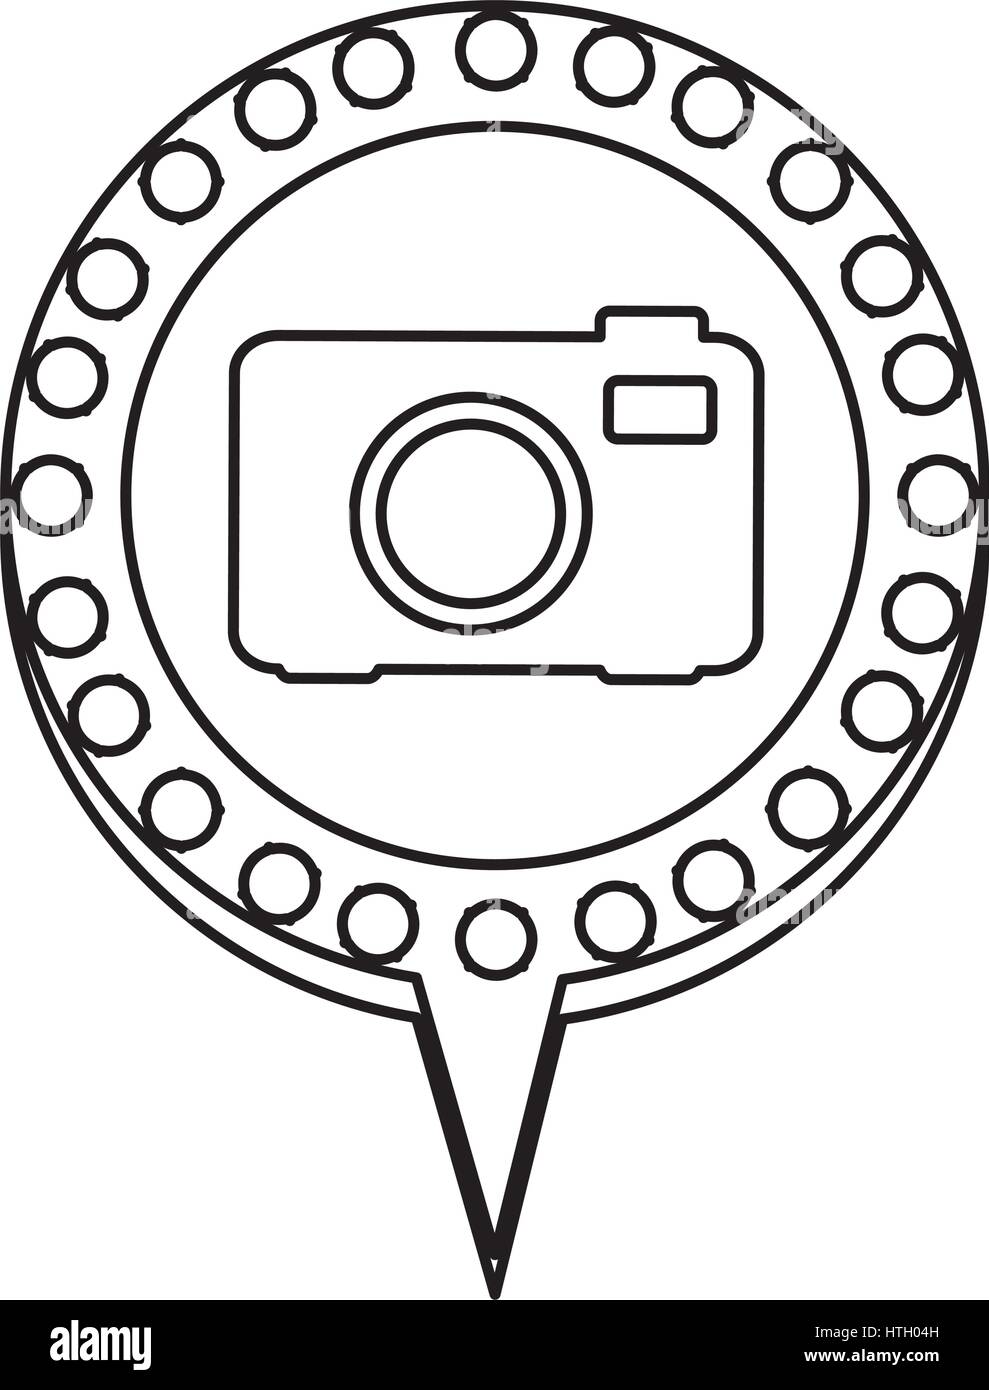 Silhouette monocromatiche di telecamera analogica e discorso di circolare con contorno punteggiato e le luci di coda Illustrazione Vettoriale